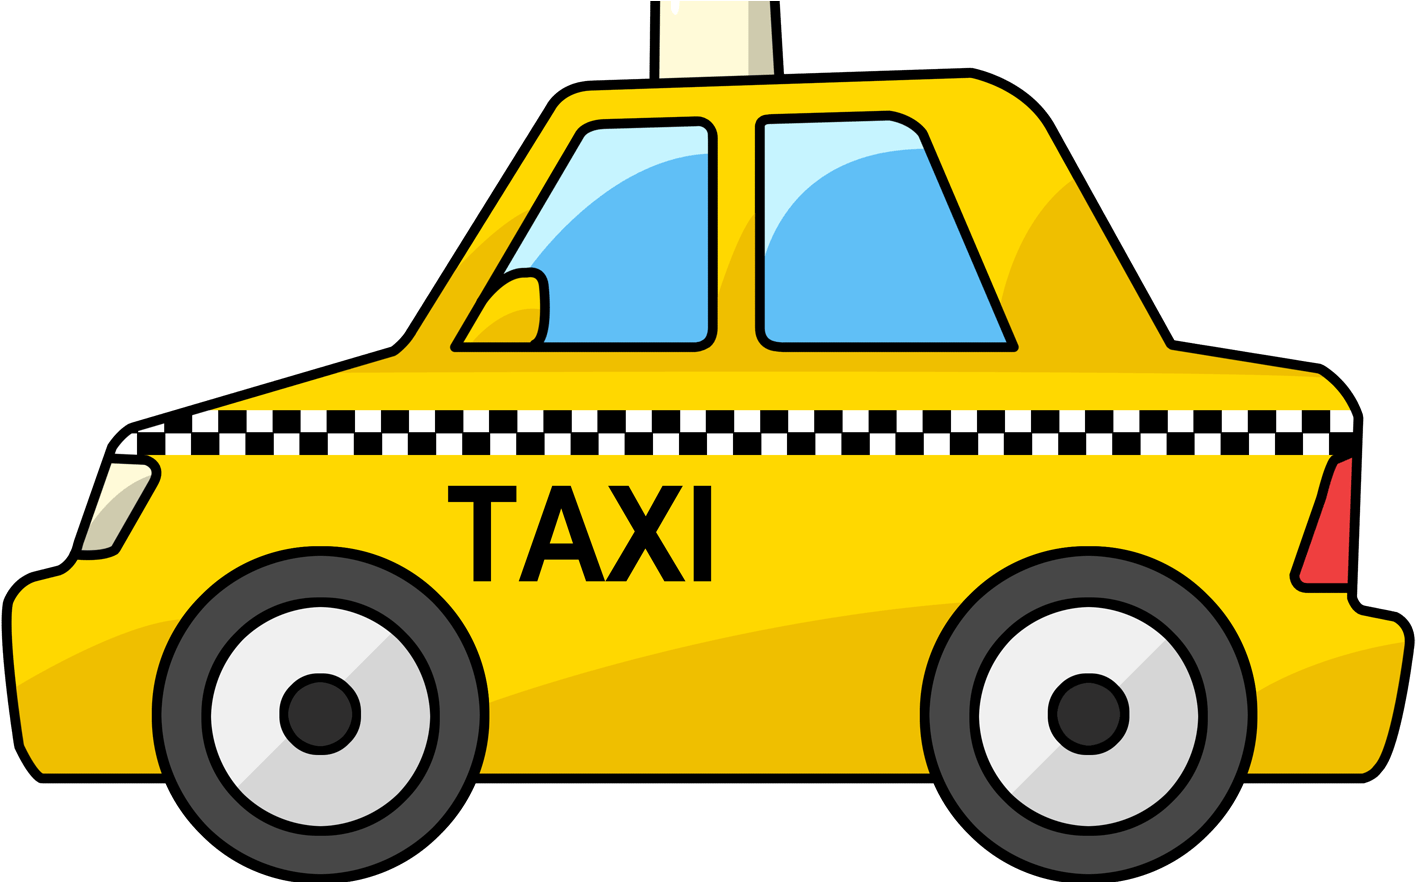 Taxi Cab Clipart British Taxi - Taxi Clipart (1600x881)